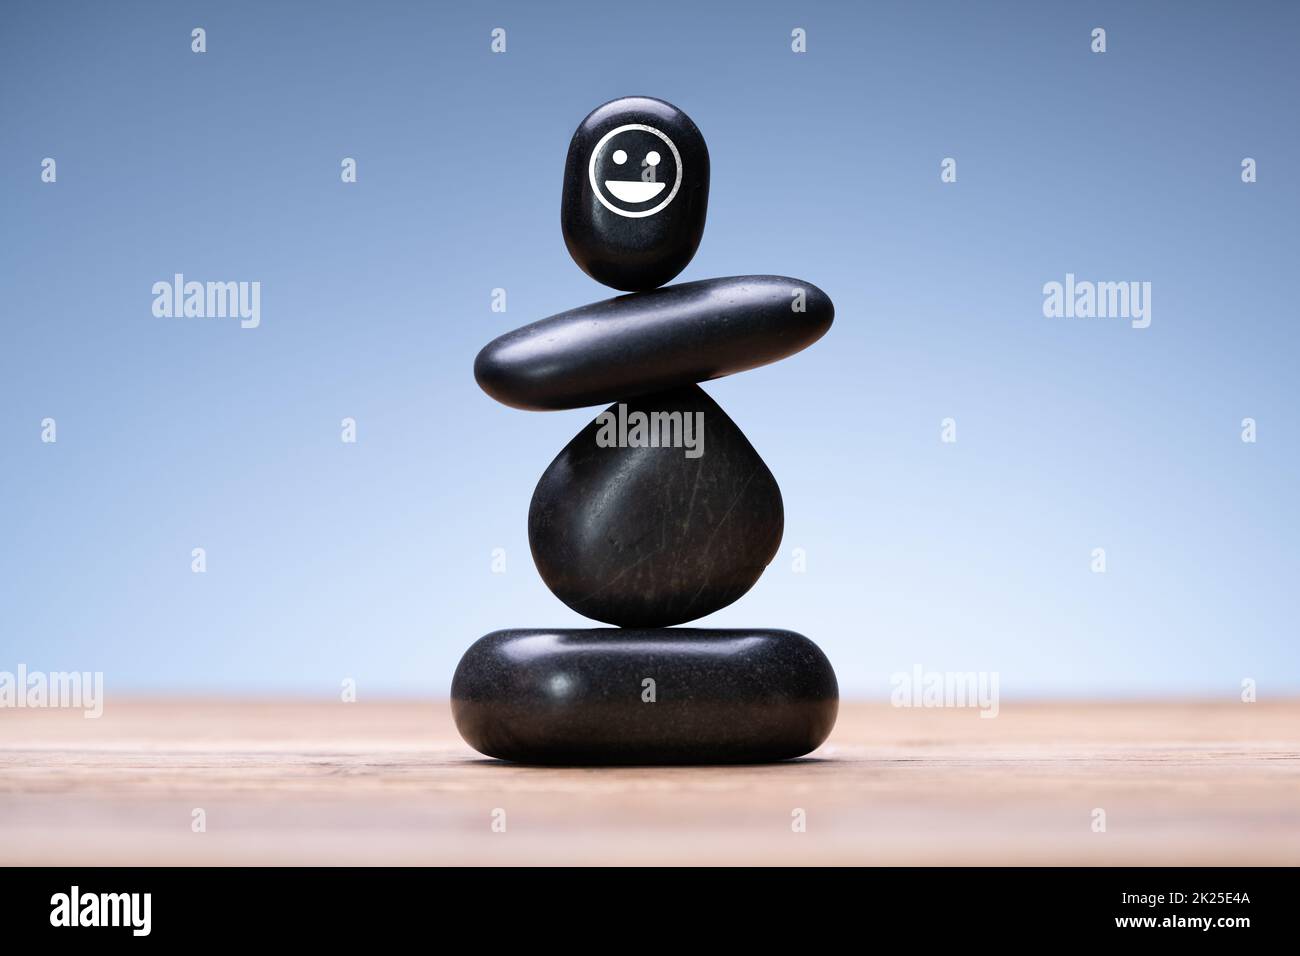 Harmony And Spa Stone Balance Stock Photo